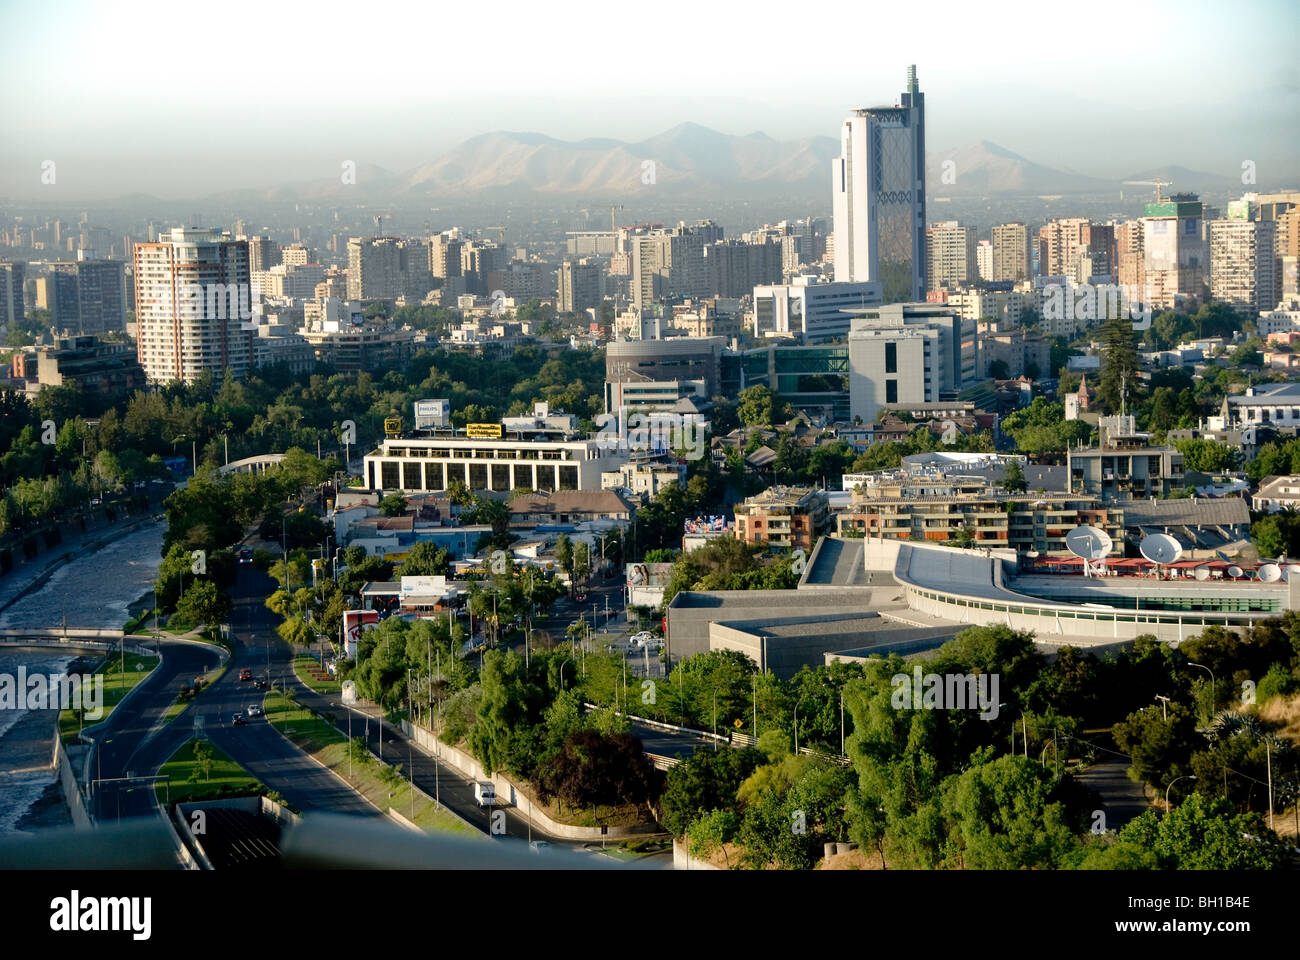 La capitale du Chili, centre financier et elle la plus grande ville du pays, fondée en 1541, se trouve dans une vallée soutenue par les Andes, Santiago, Chili Banque D'Images